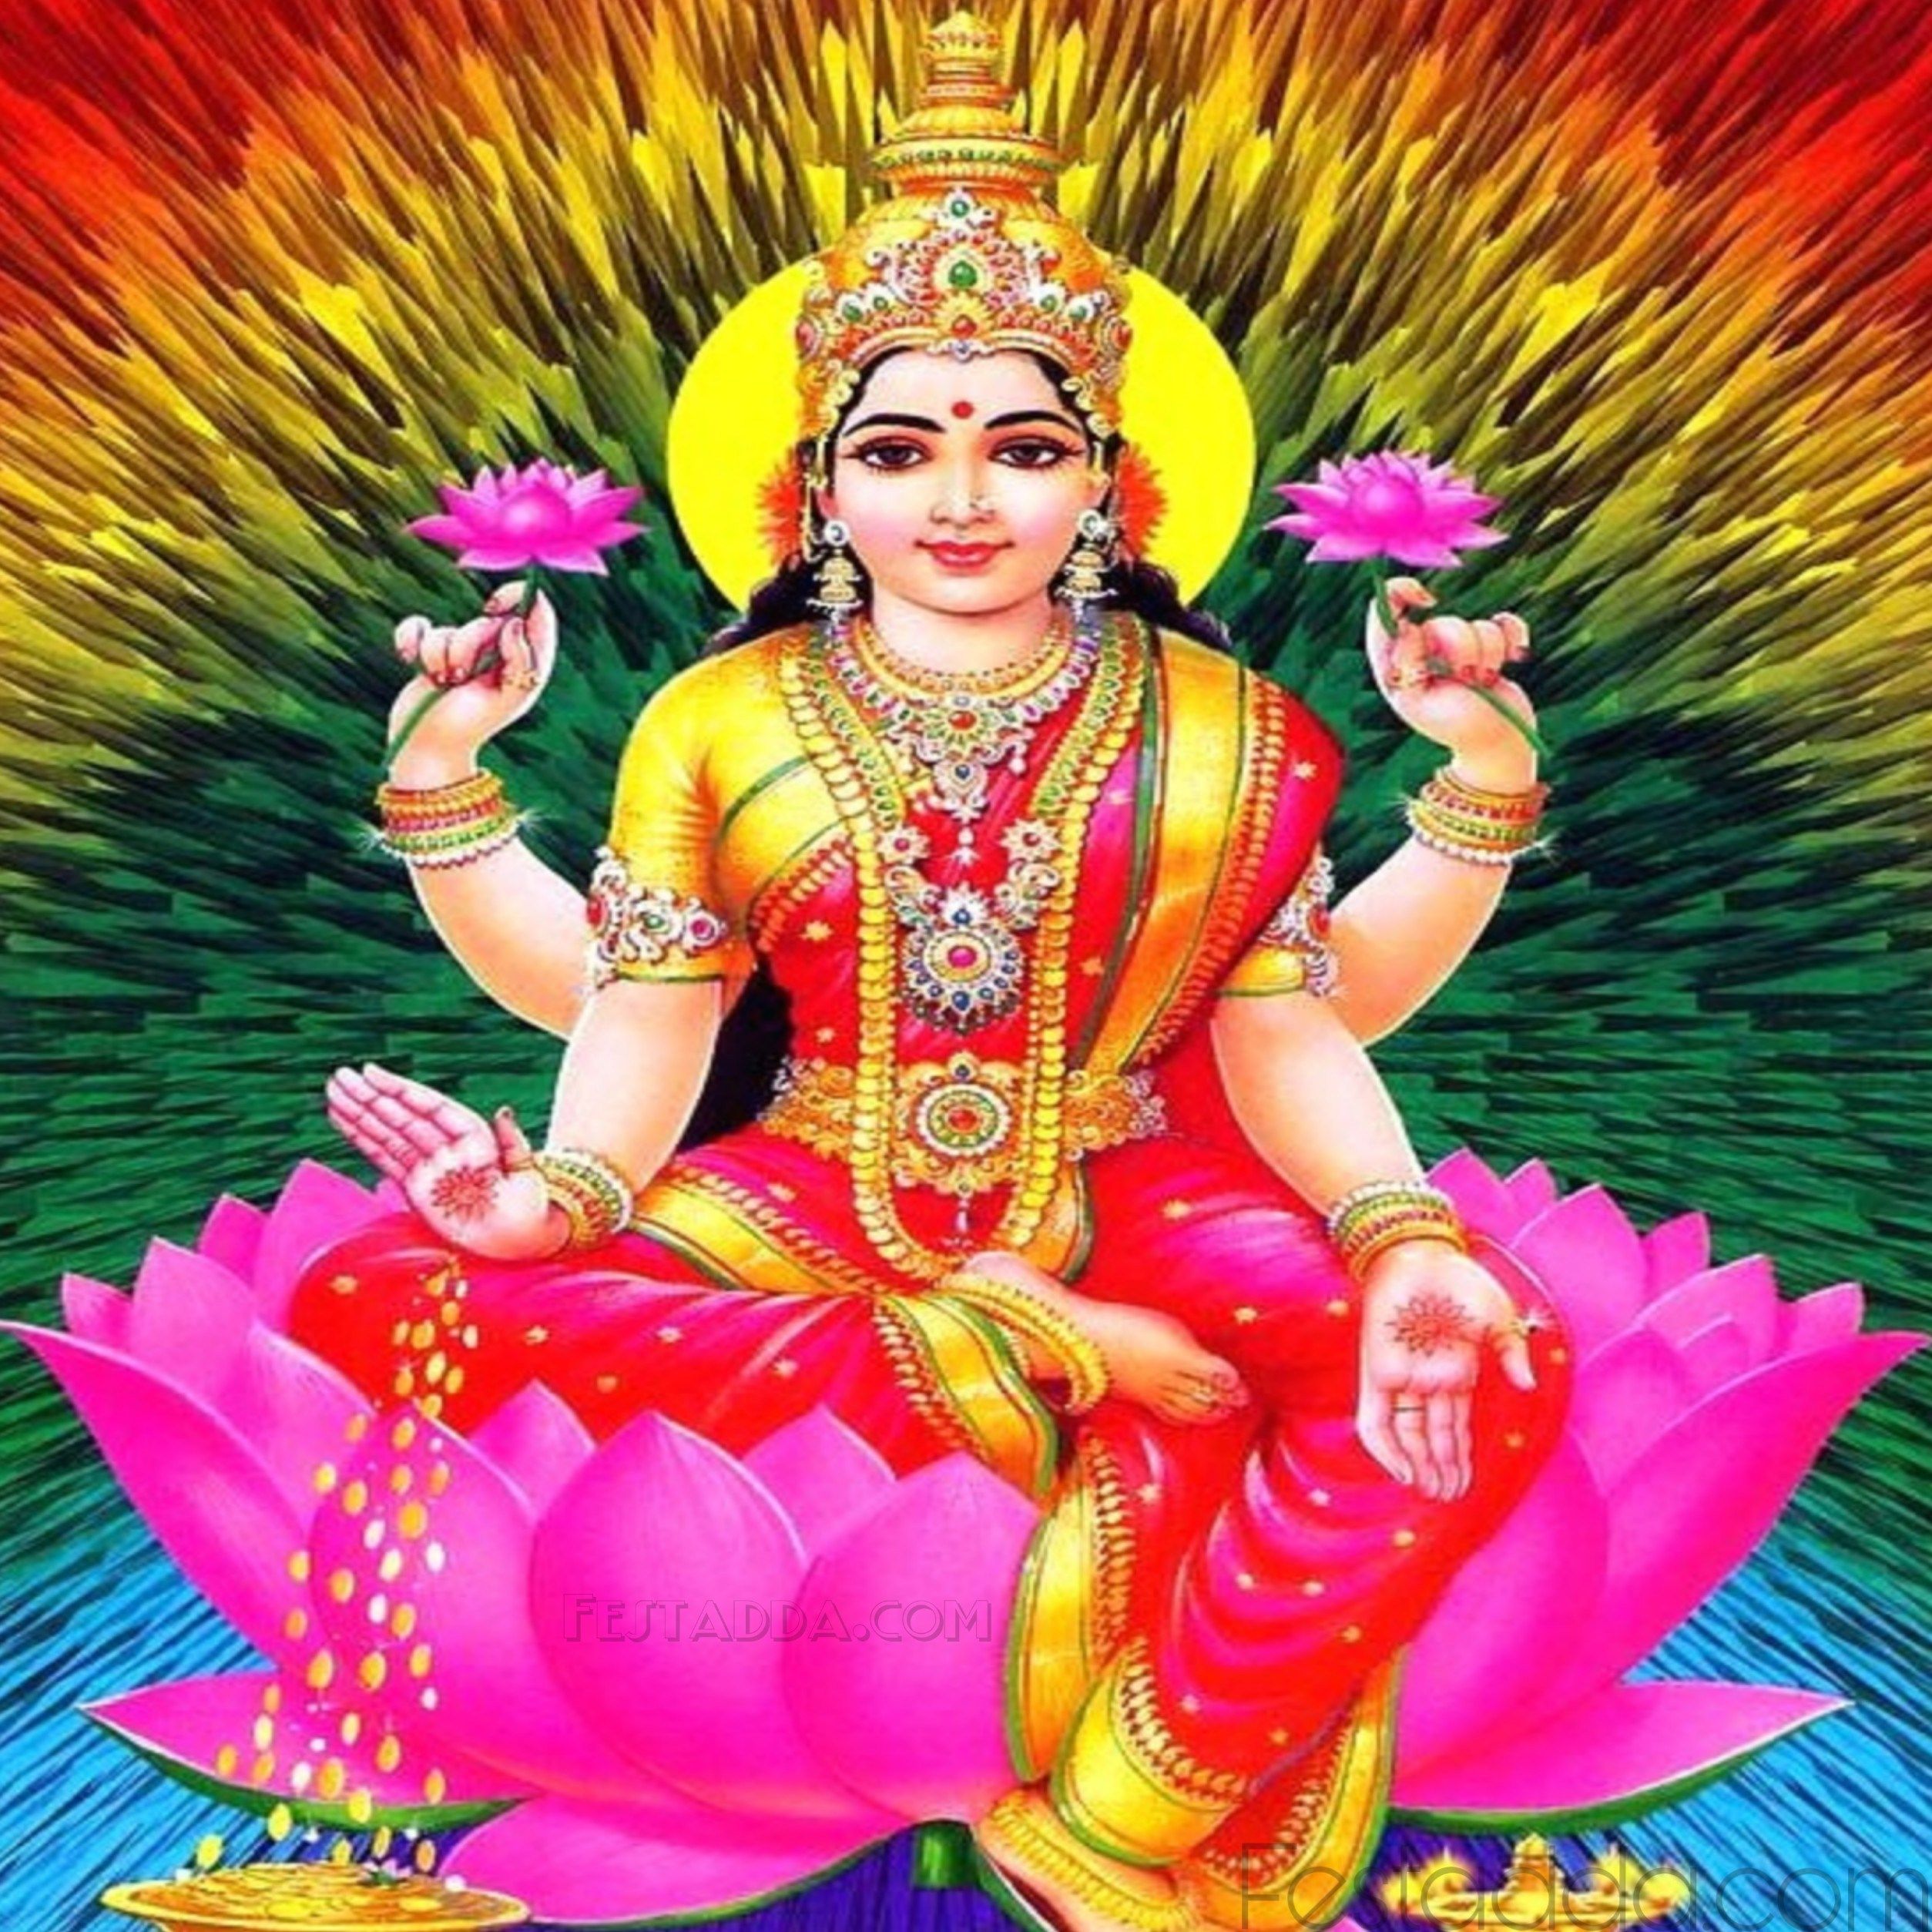 Goddess Lakshmi Photos High Resolution - 2508x2508 Wallpaper 